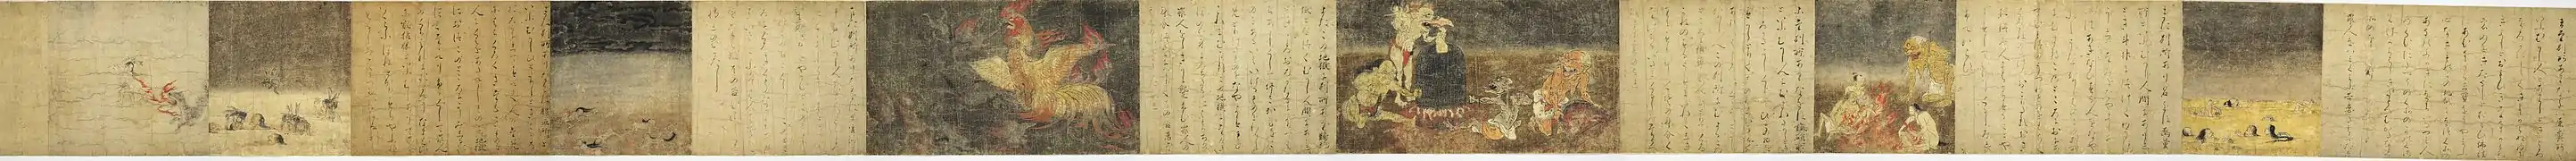 Alternance entre texte et peinture. Rouleau des enfers de Nara, XIIe.